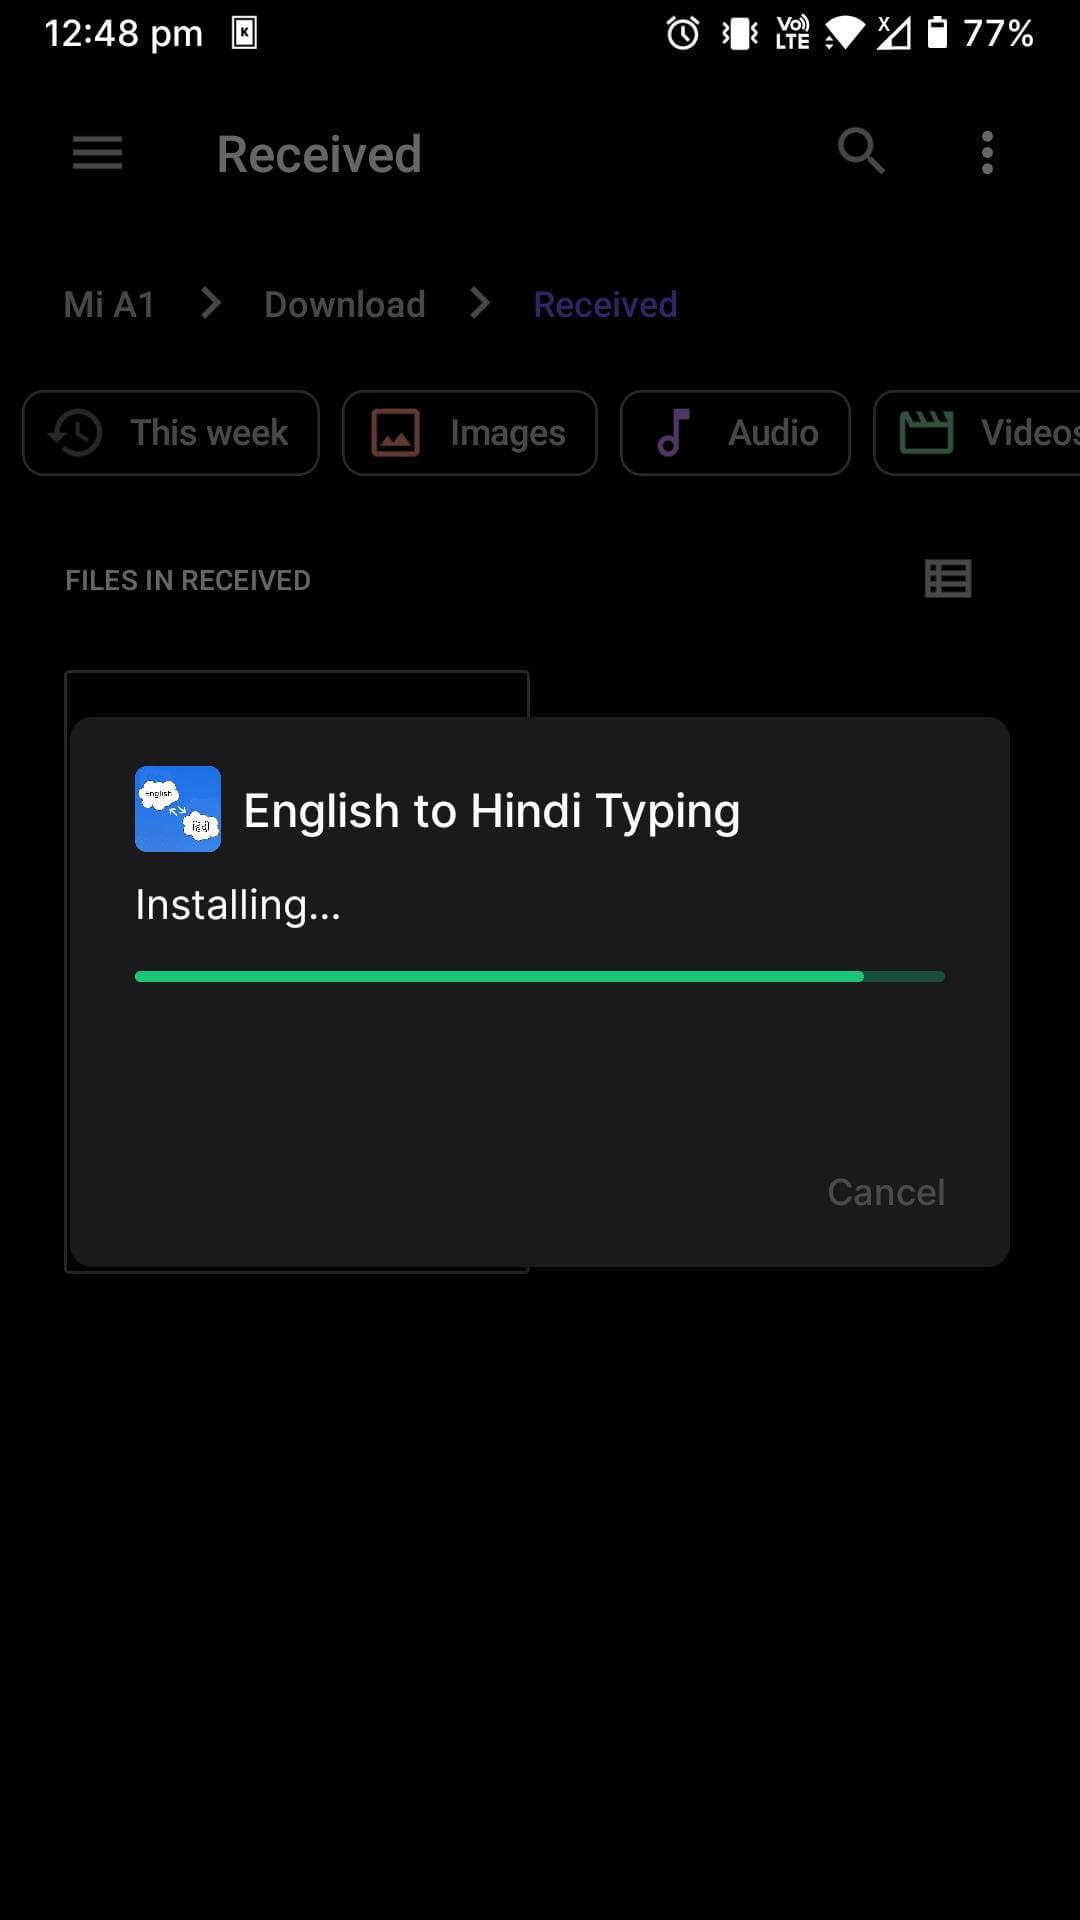 english to hindi typing app installing